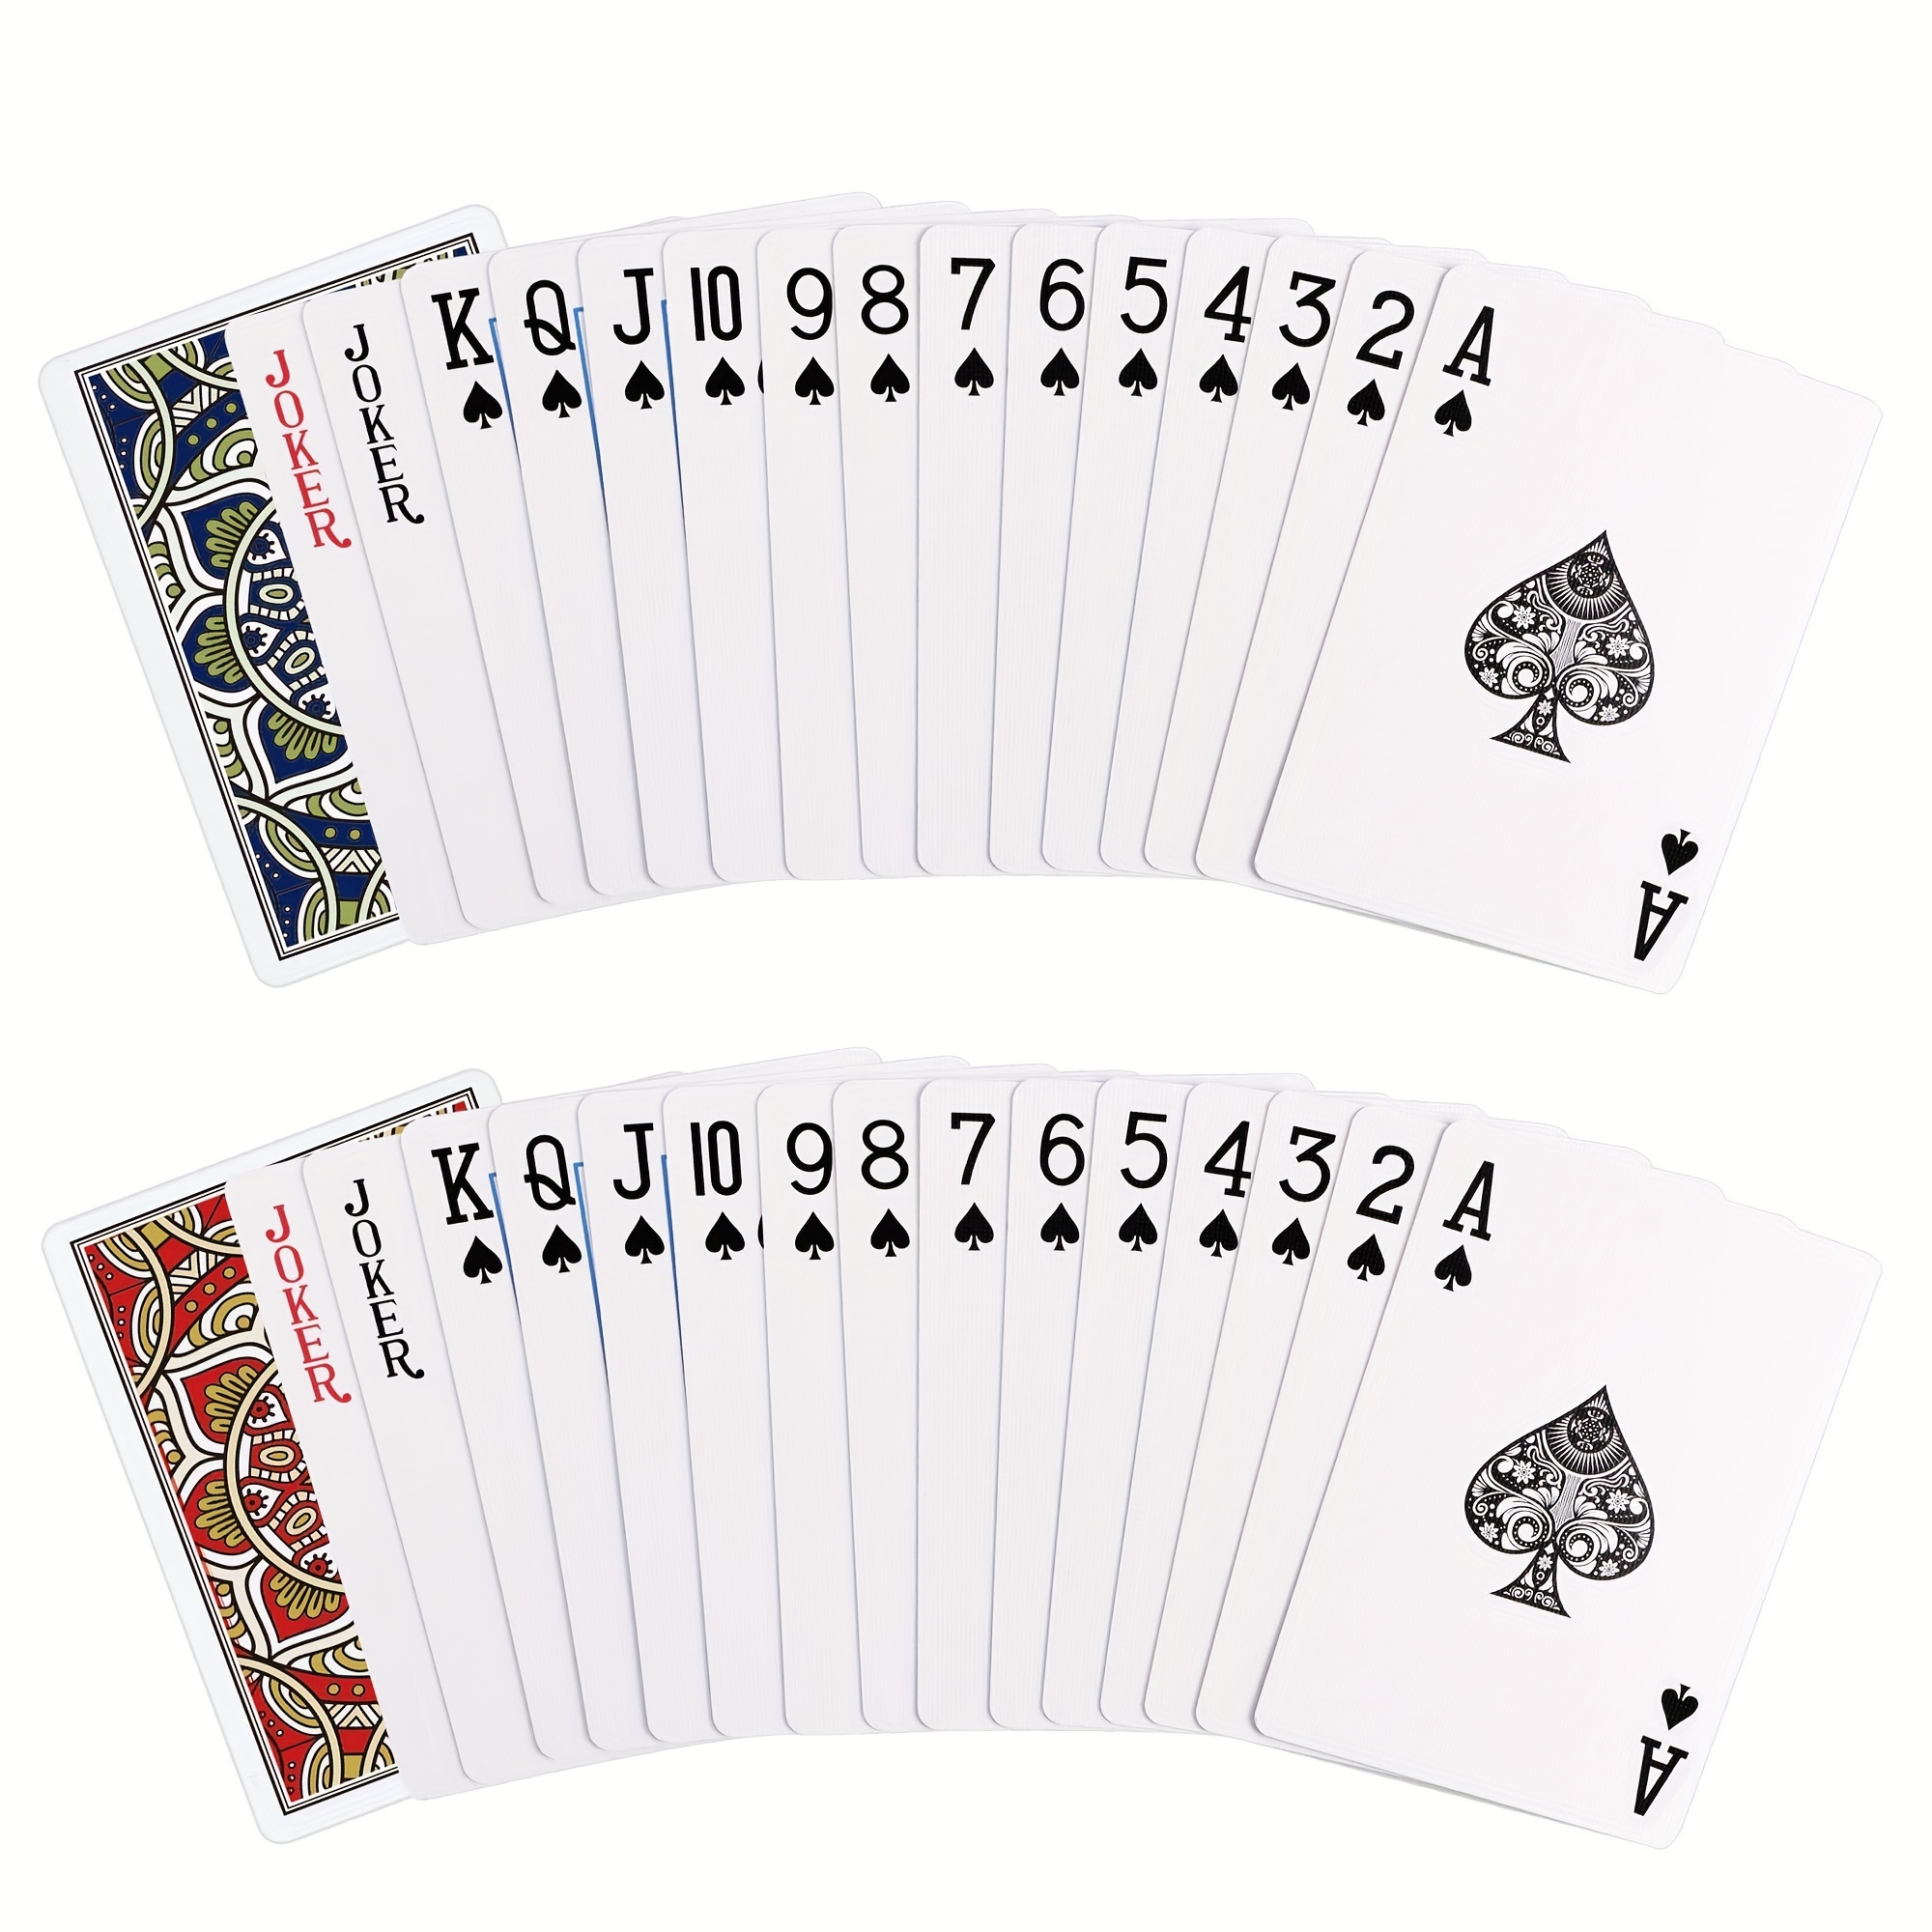 Jeu de cartes à jouer étanche avec jokers – 54 cartes en plastique  transparent, taille de poker